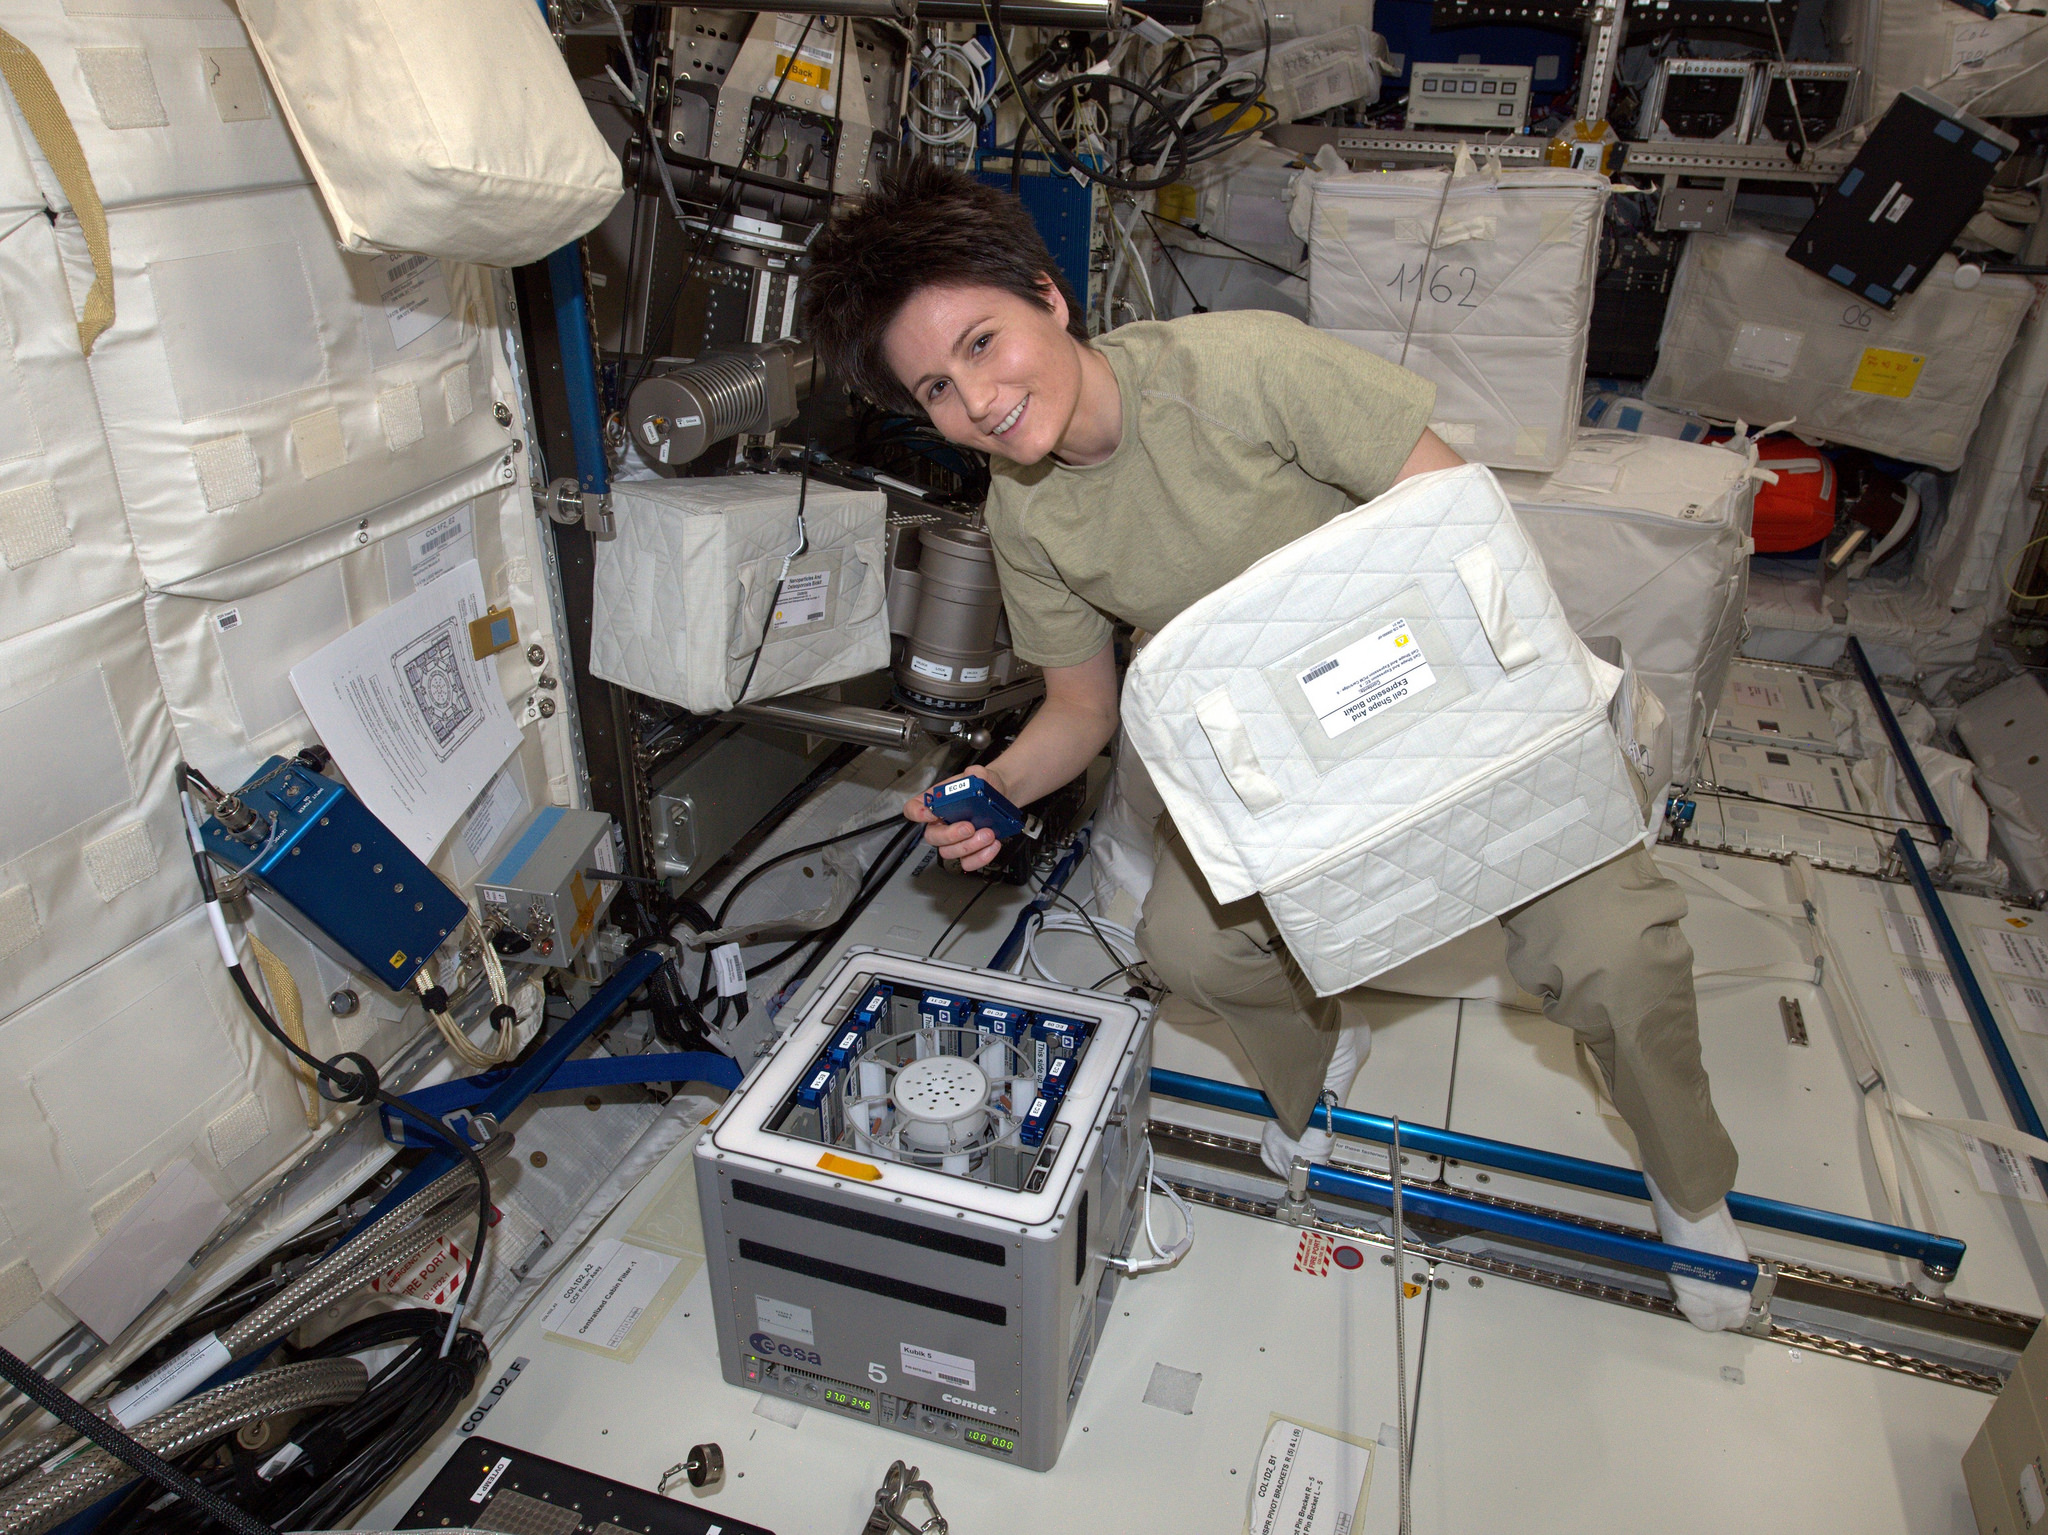 L'esperimento dell'Università di Pavia a bordo della ISS (video)